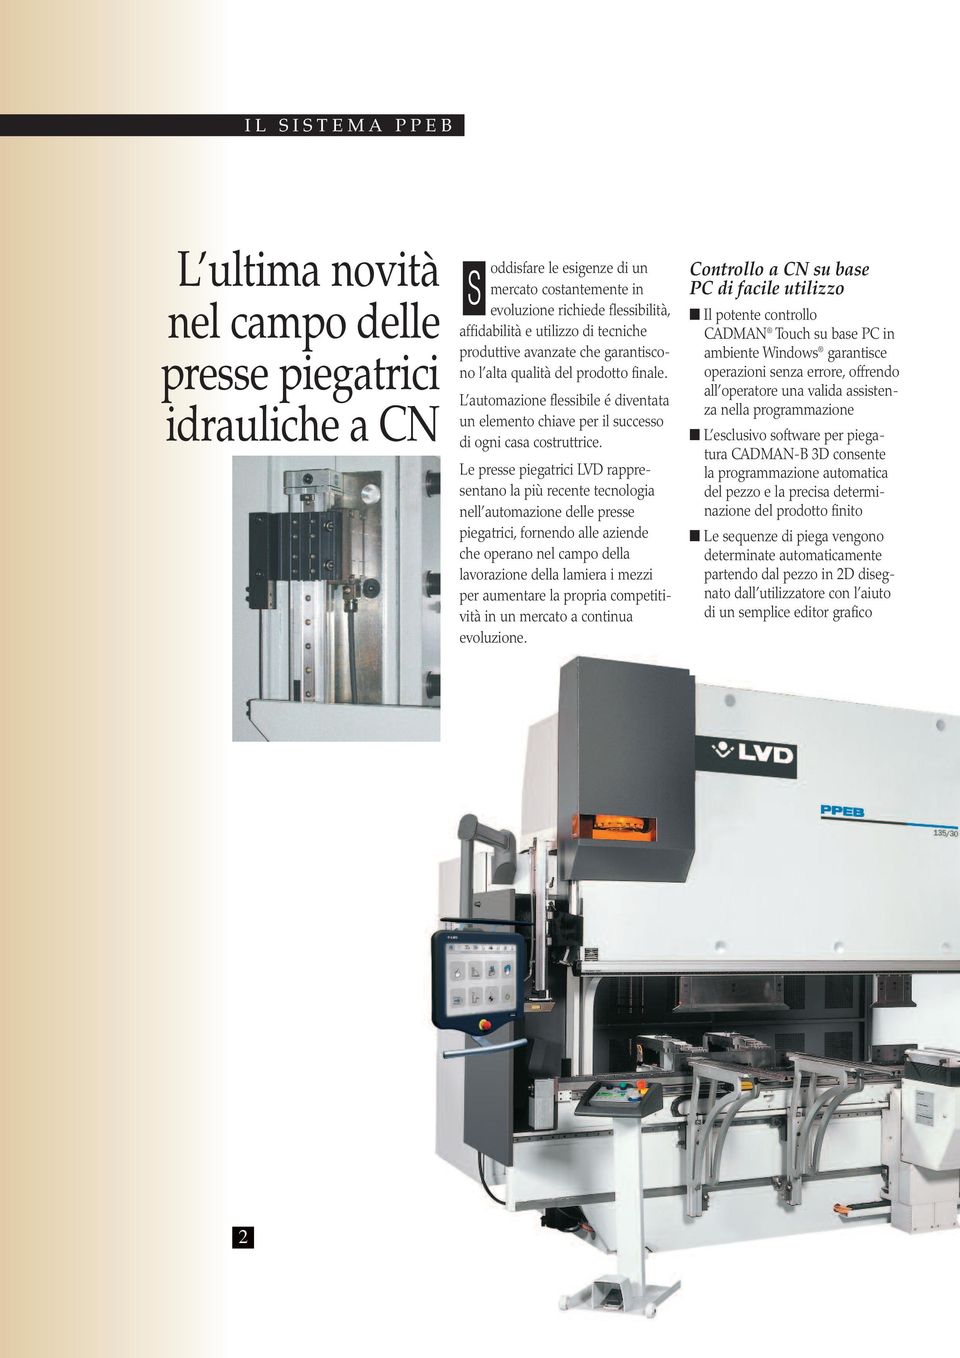 Le presse piegatrici LVD rappresentano la più recente tecnologia nell automazione delle presse piegatrici, fornendo alle aziende che operano nel campo della lavorazione della lamiera i mezzi per